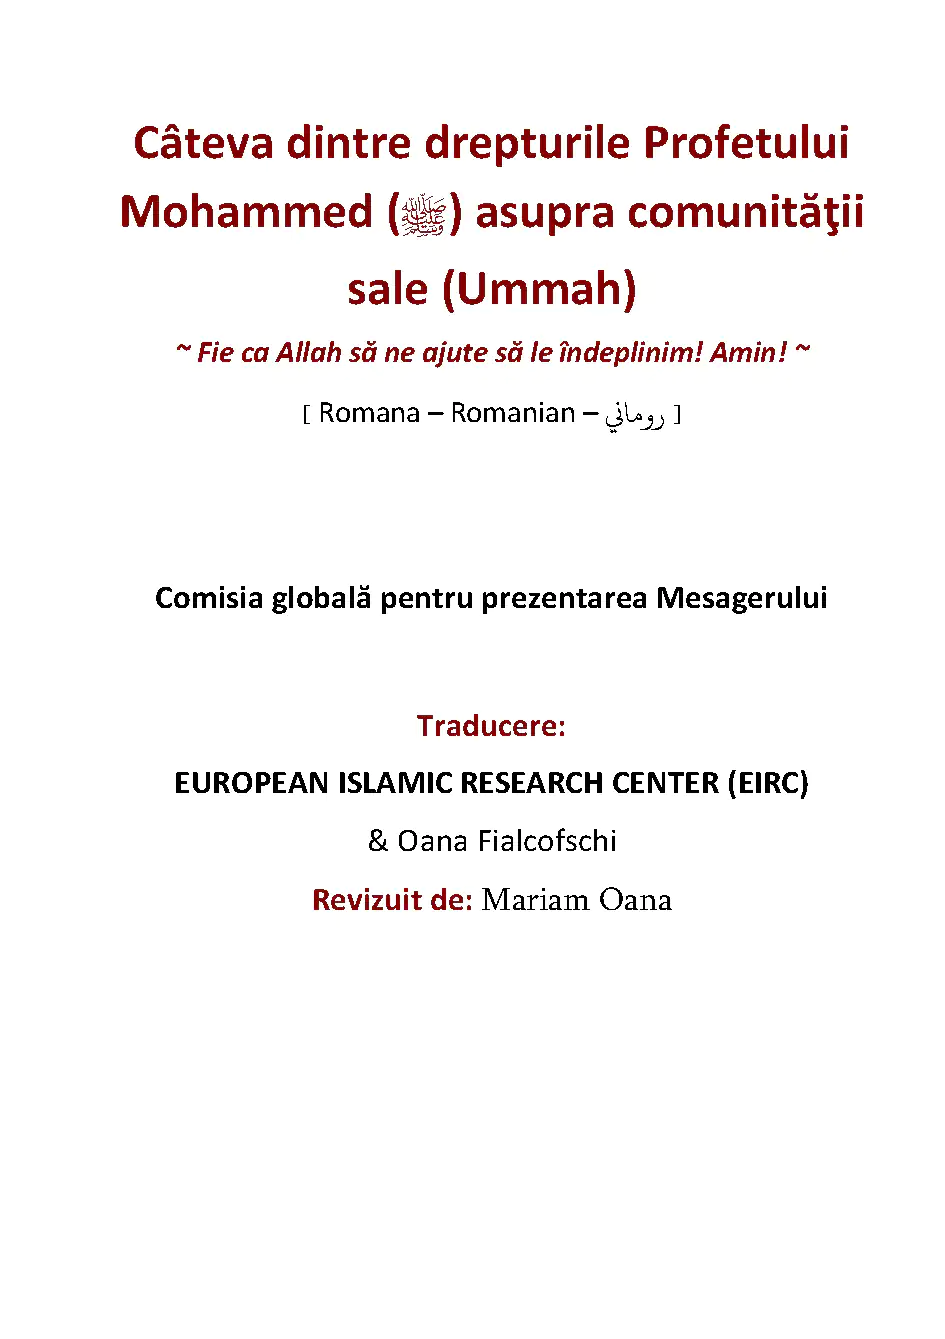 Câteva dintre drepturile Profetului Mohammed (ﷺ) asupra comunităţii sale (Ummah)